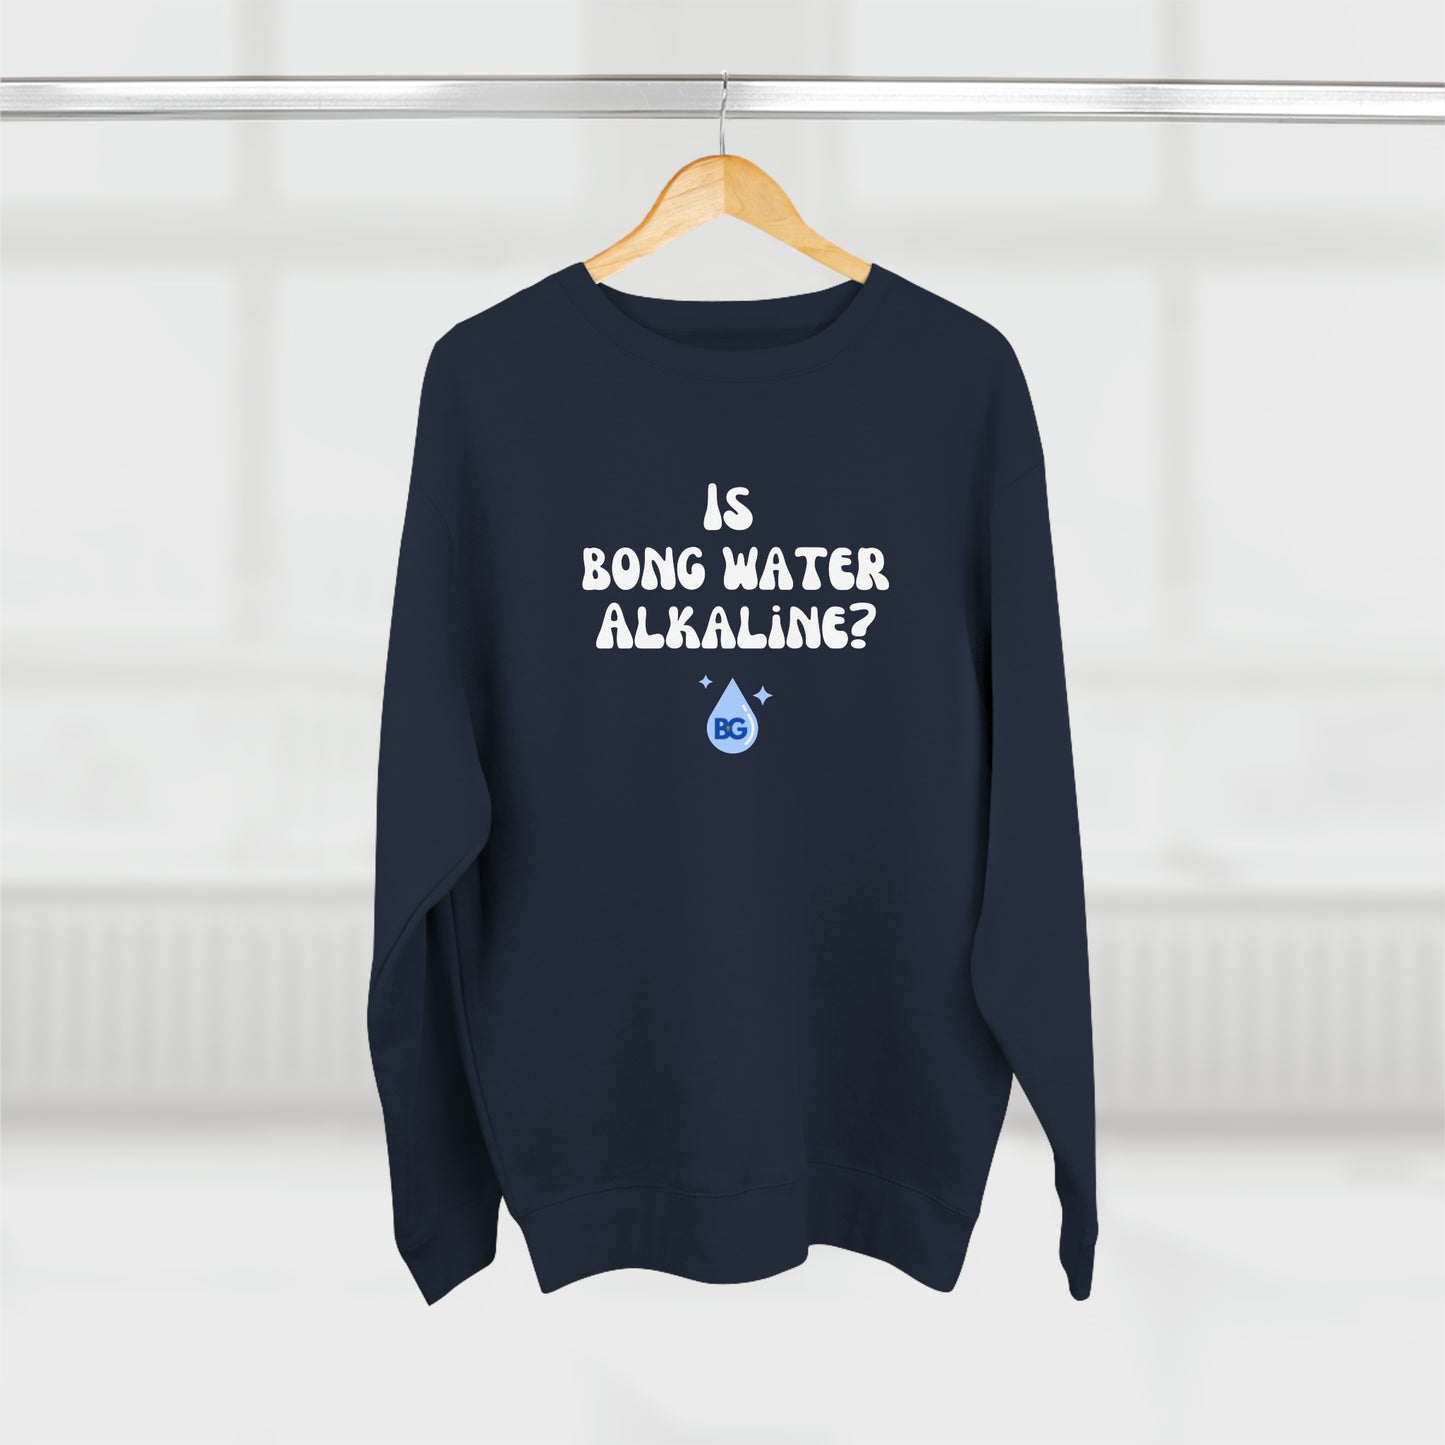 BG "Is bong water alkaline?" Premium Crewneck Sweatshirt